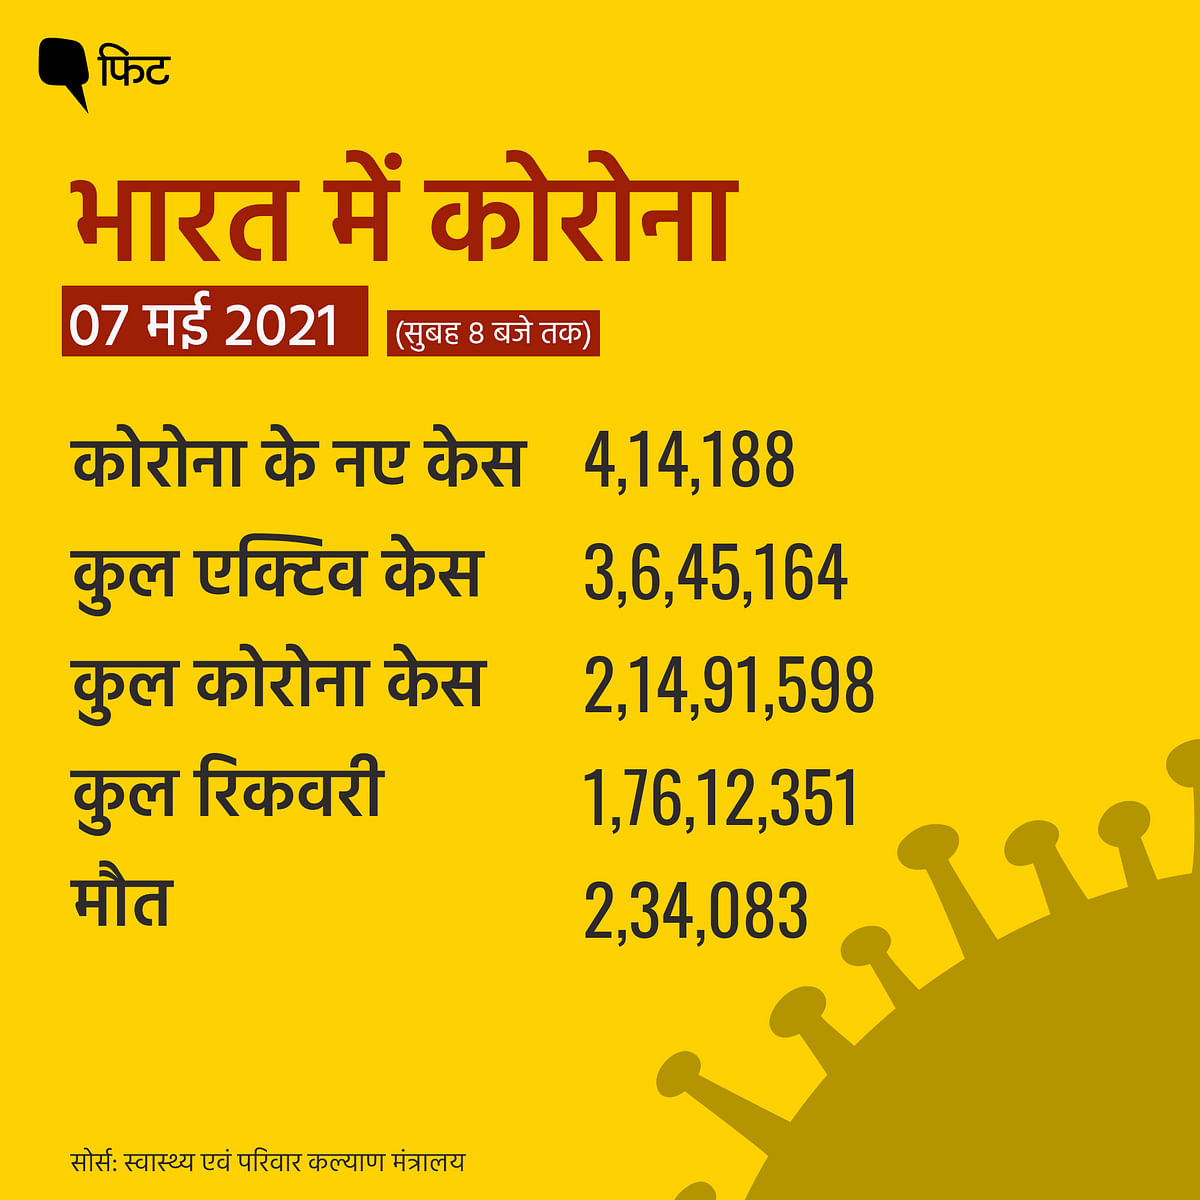 भारत में लगातार दूसरे दिन कोरोना के केस 4 लाख के पार पहुंच गए.